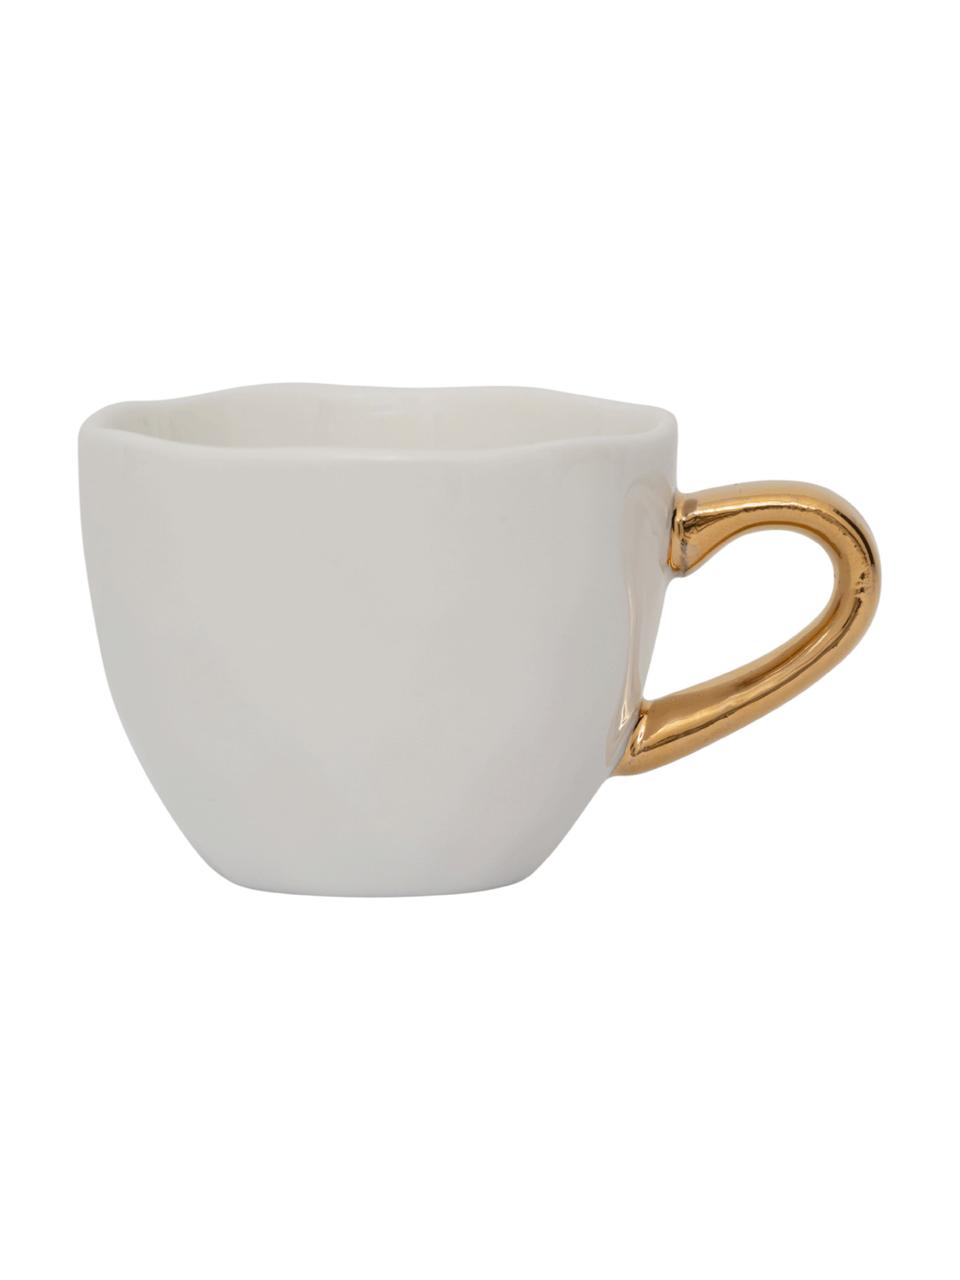 Espressotassen Good Morning mit goldfarbenem Griff, 2 Stück, Steingut, Weiß, Goldfarben, Ø 6 x H 5 cm, 95 ml